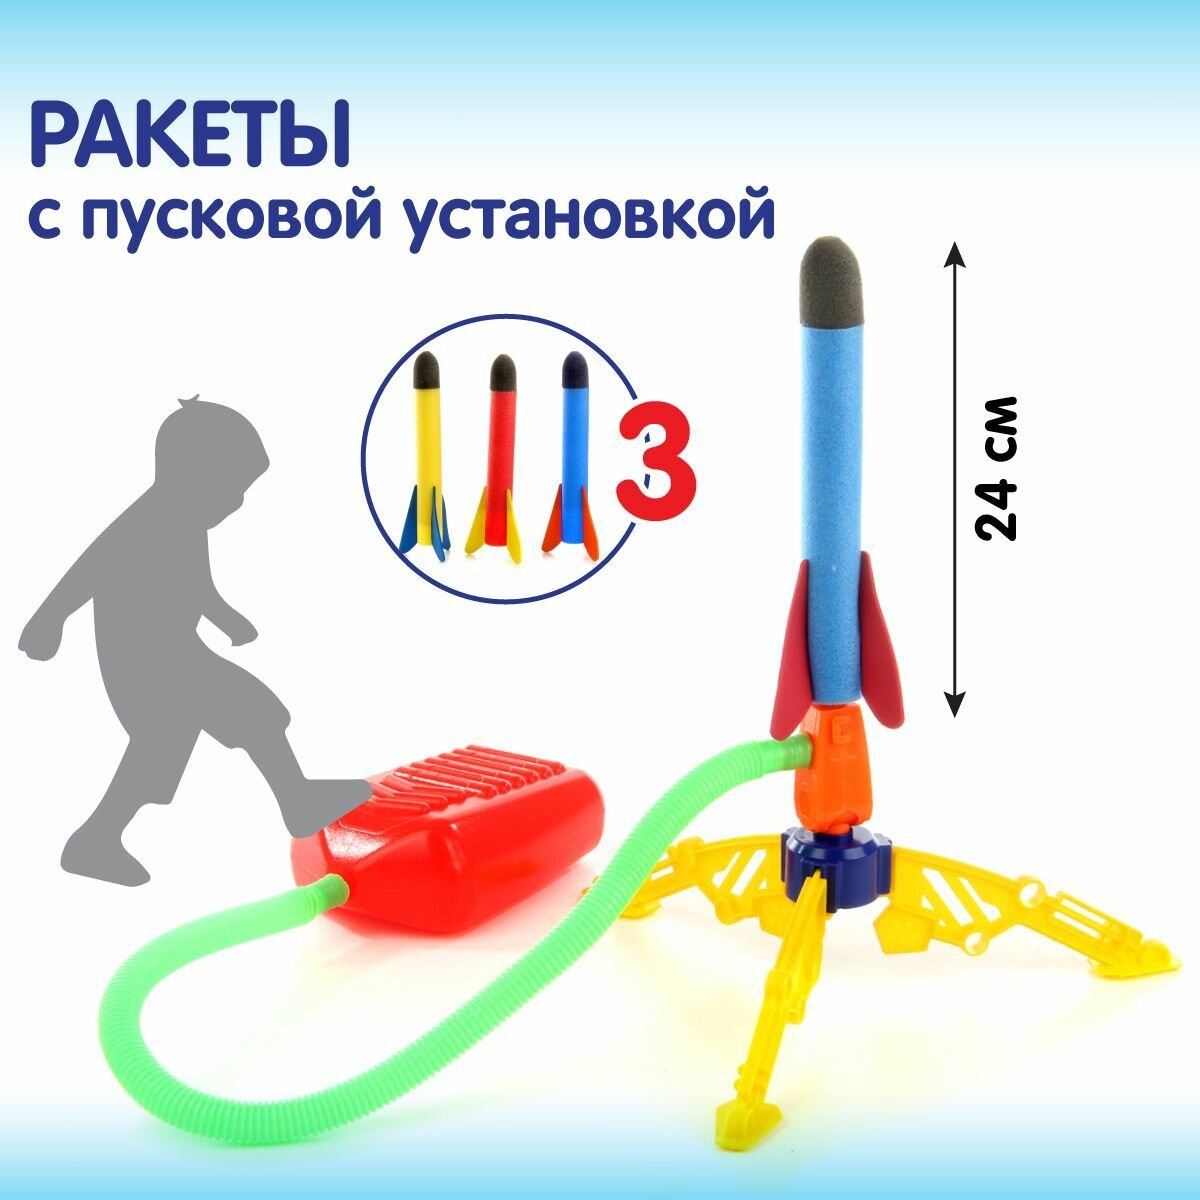 Детская ракетная установка, Veld Co / Ракета с запуском / Летающая игрушка